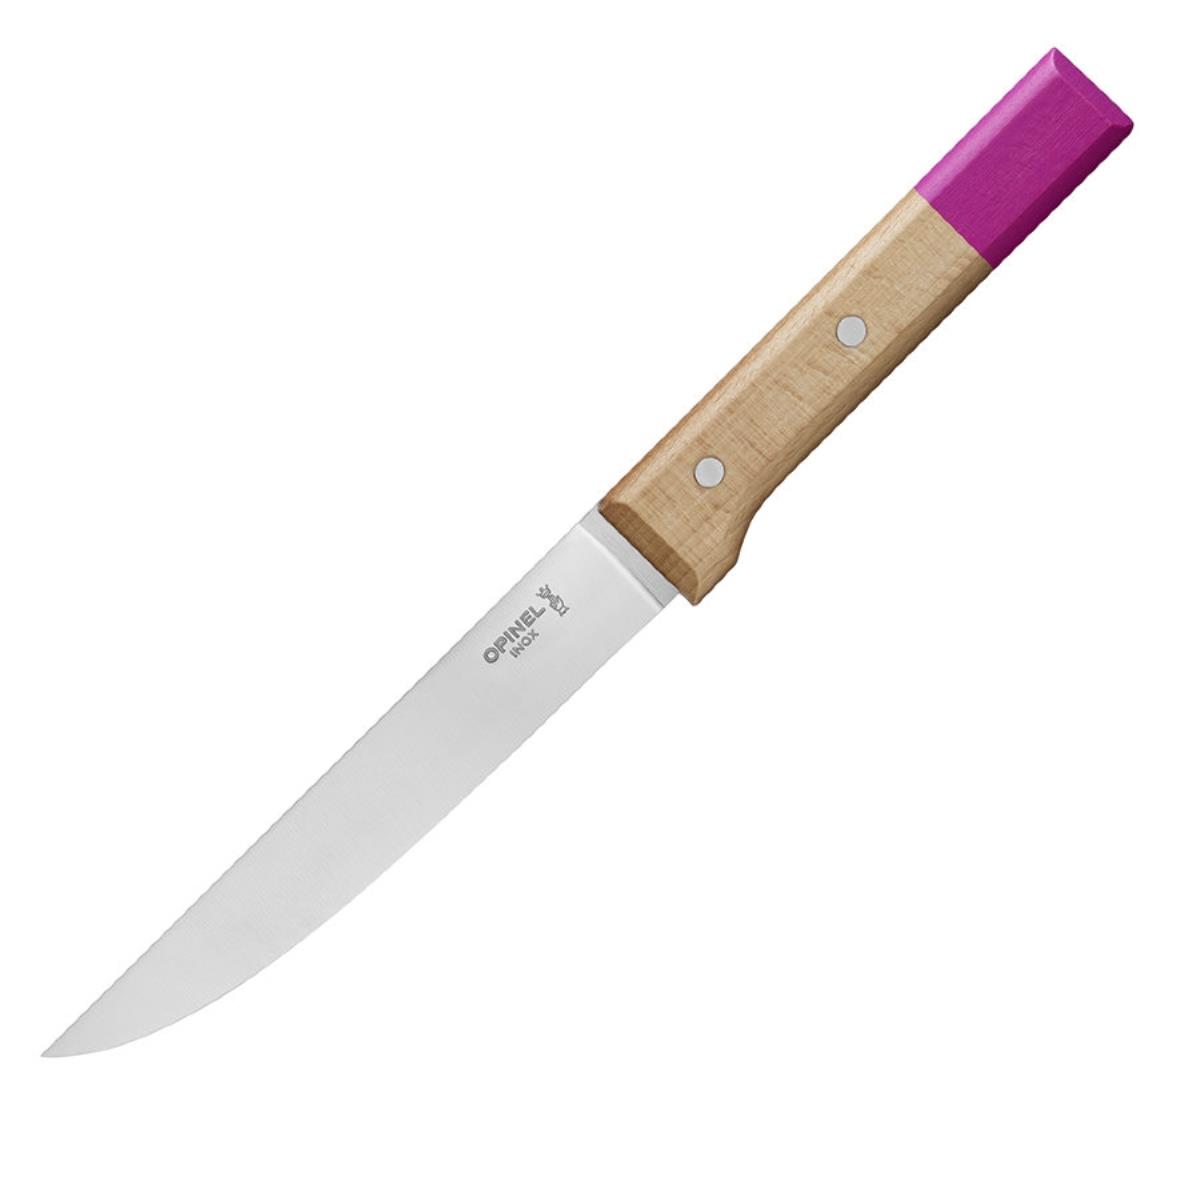 Нож кухонный №120 VRI Parallele длямяса и птицы (нерж. сталь,  бук, длина клинка 13см) OPINEL